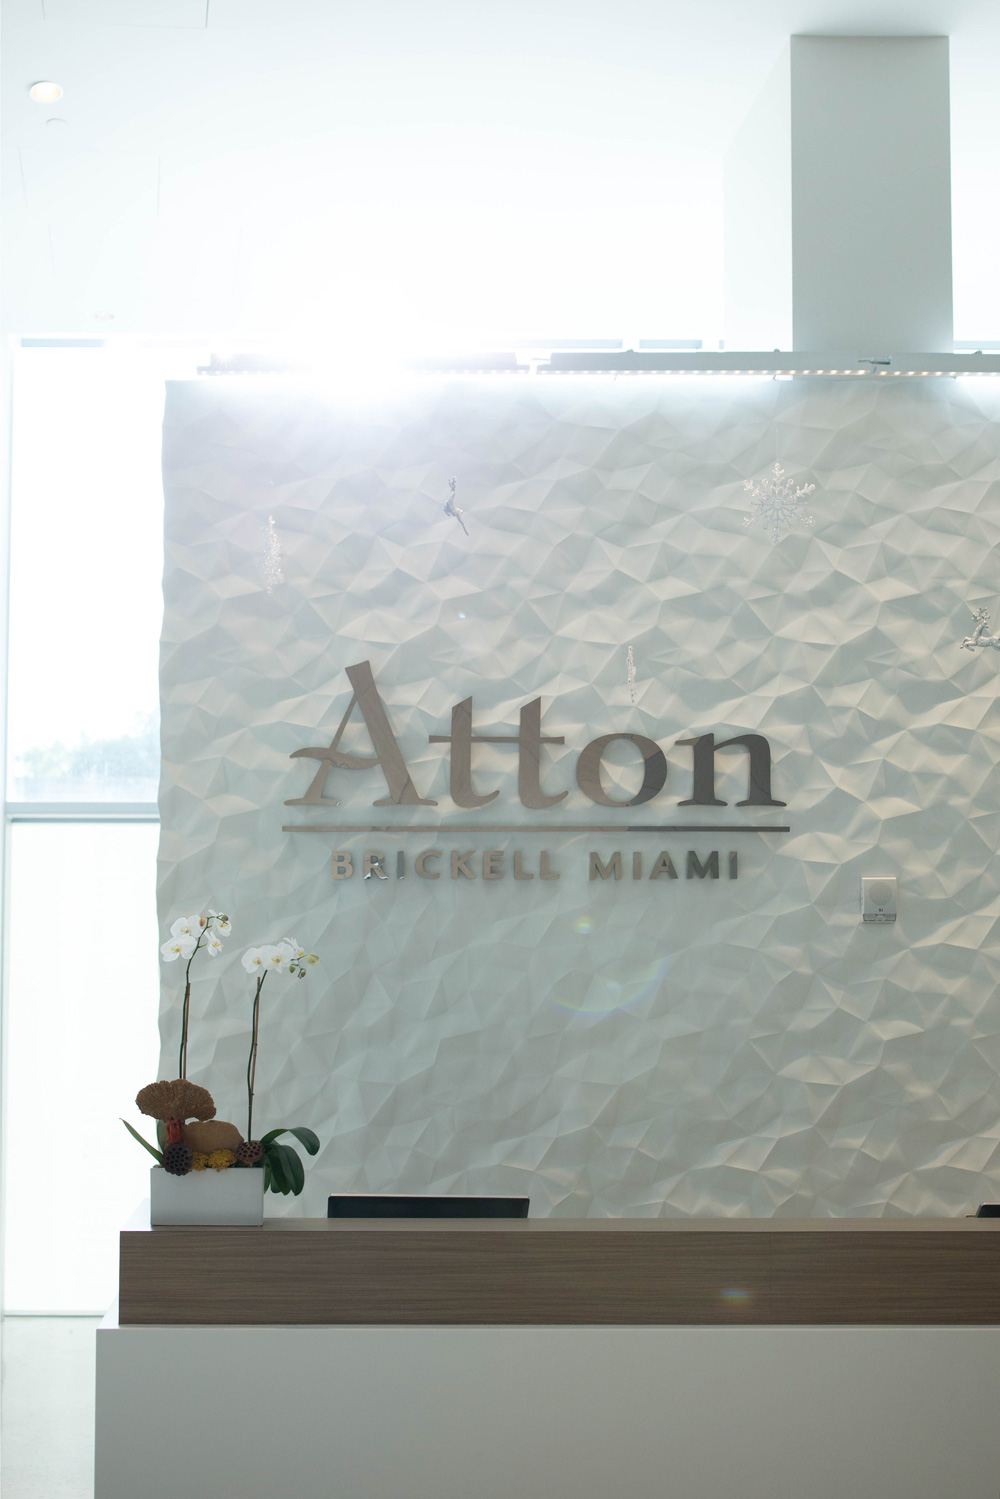 Atton Brickell Miami Hotel